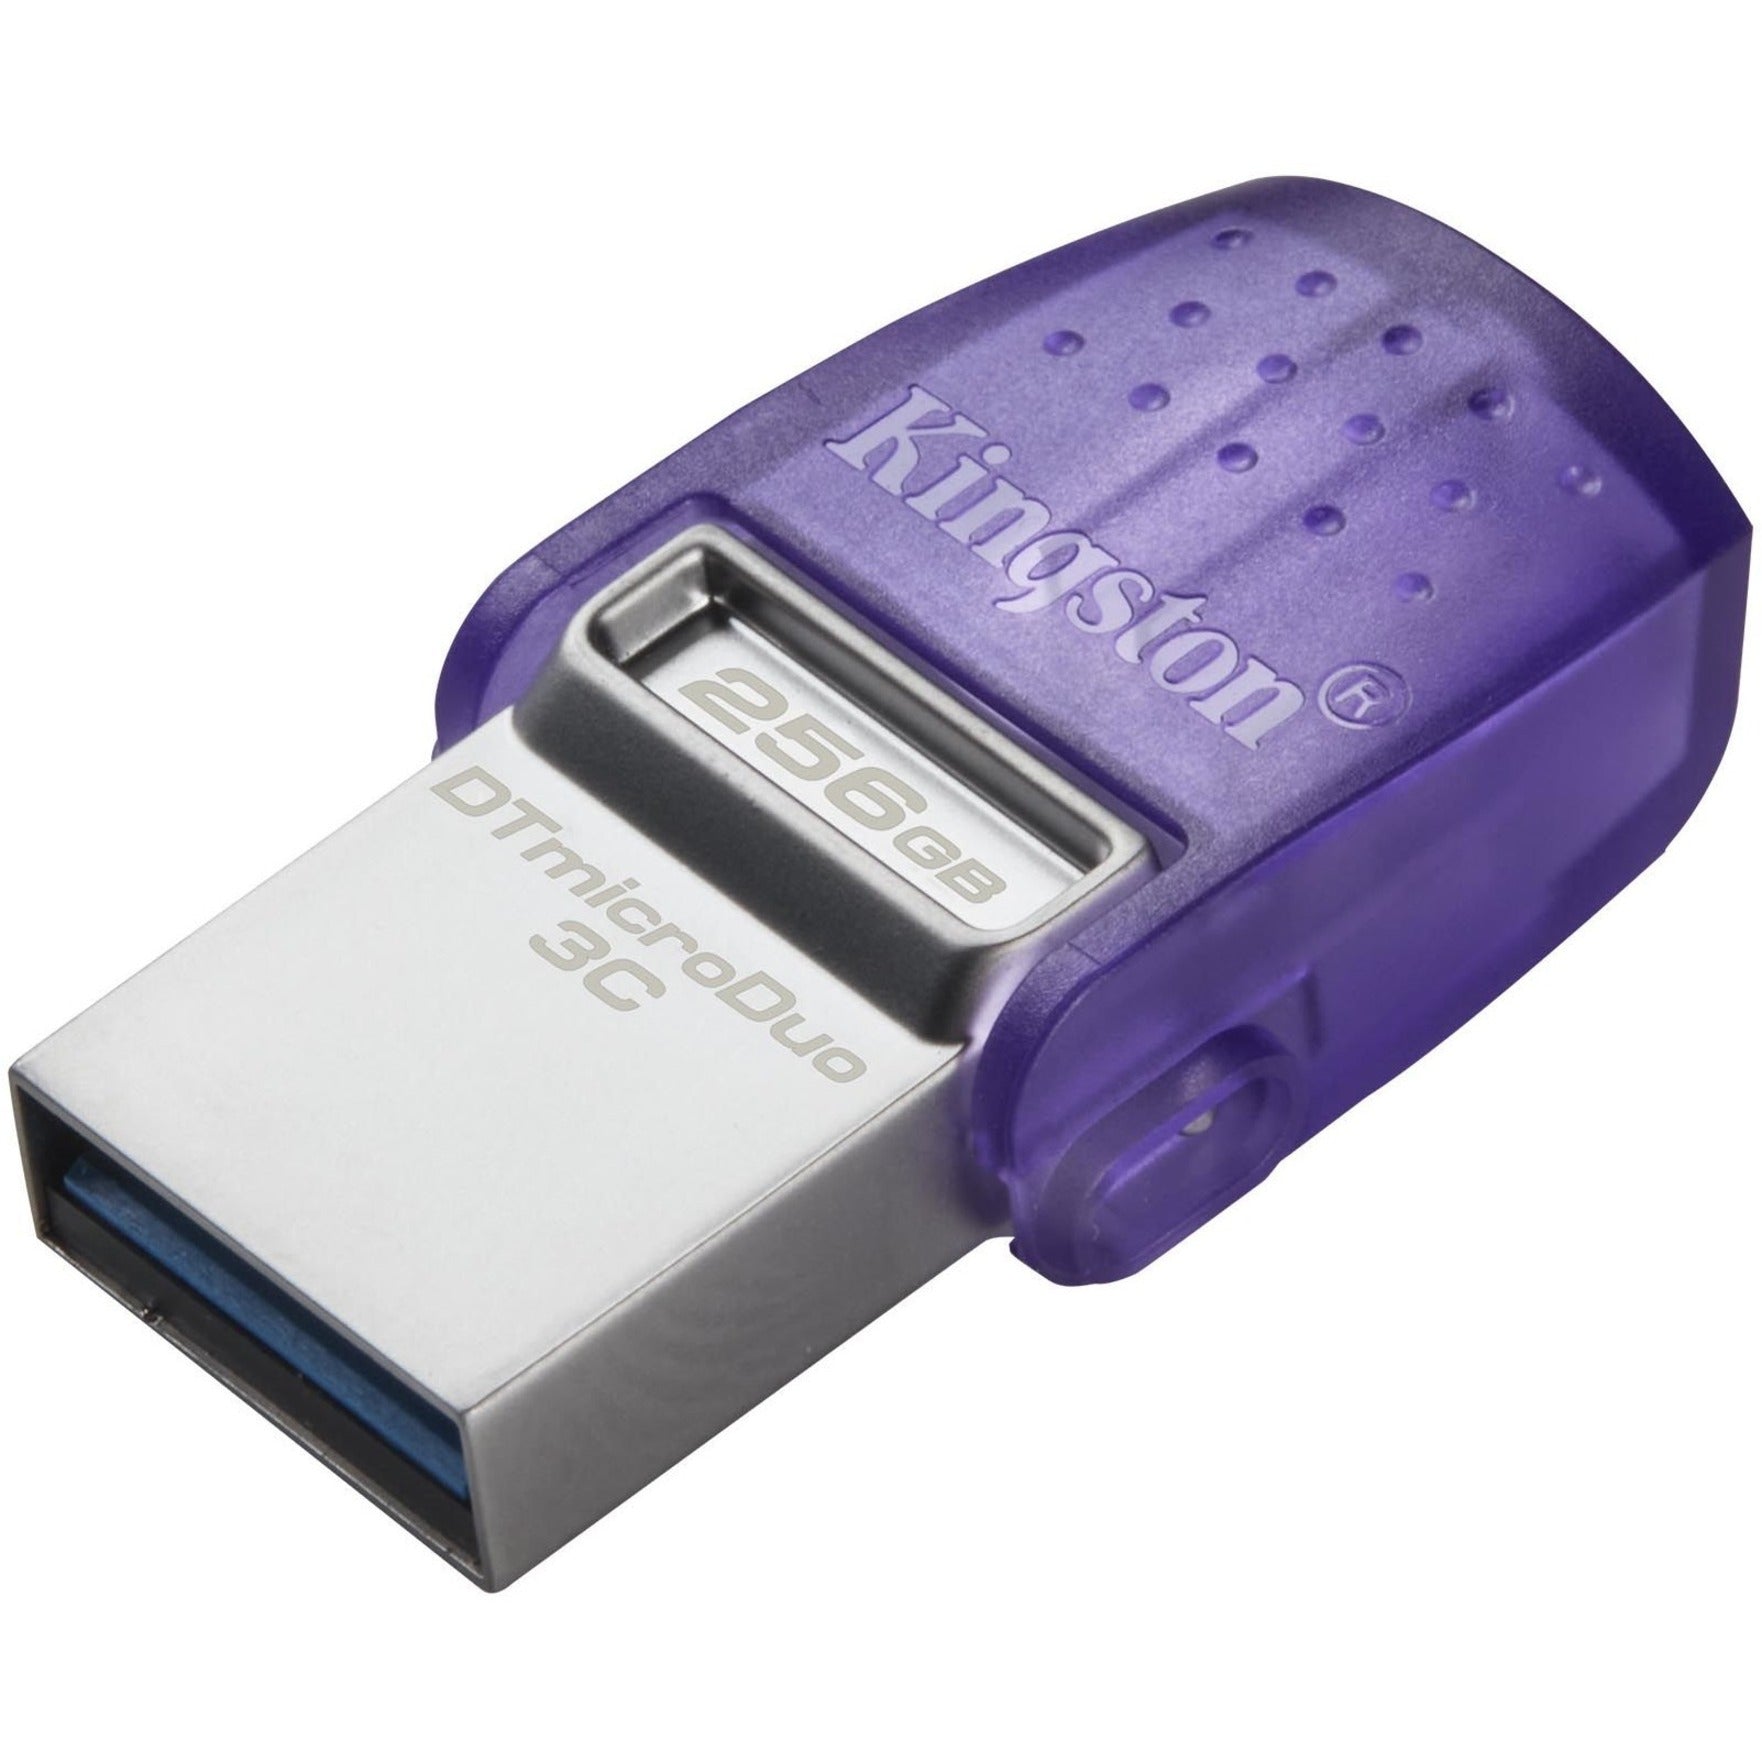 金士顿 DTDUO3CG3/256GB DataTraveler microDuo 3C 闪存盘 256GB 存储 紫色 金士顿品牌 金士顿